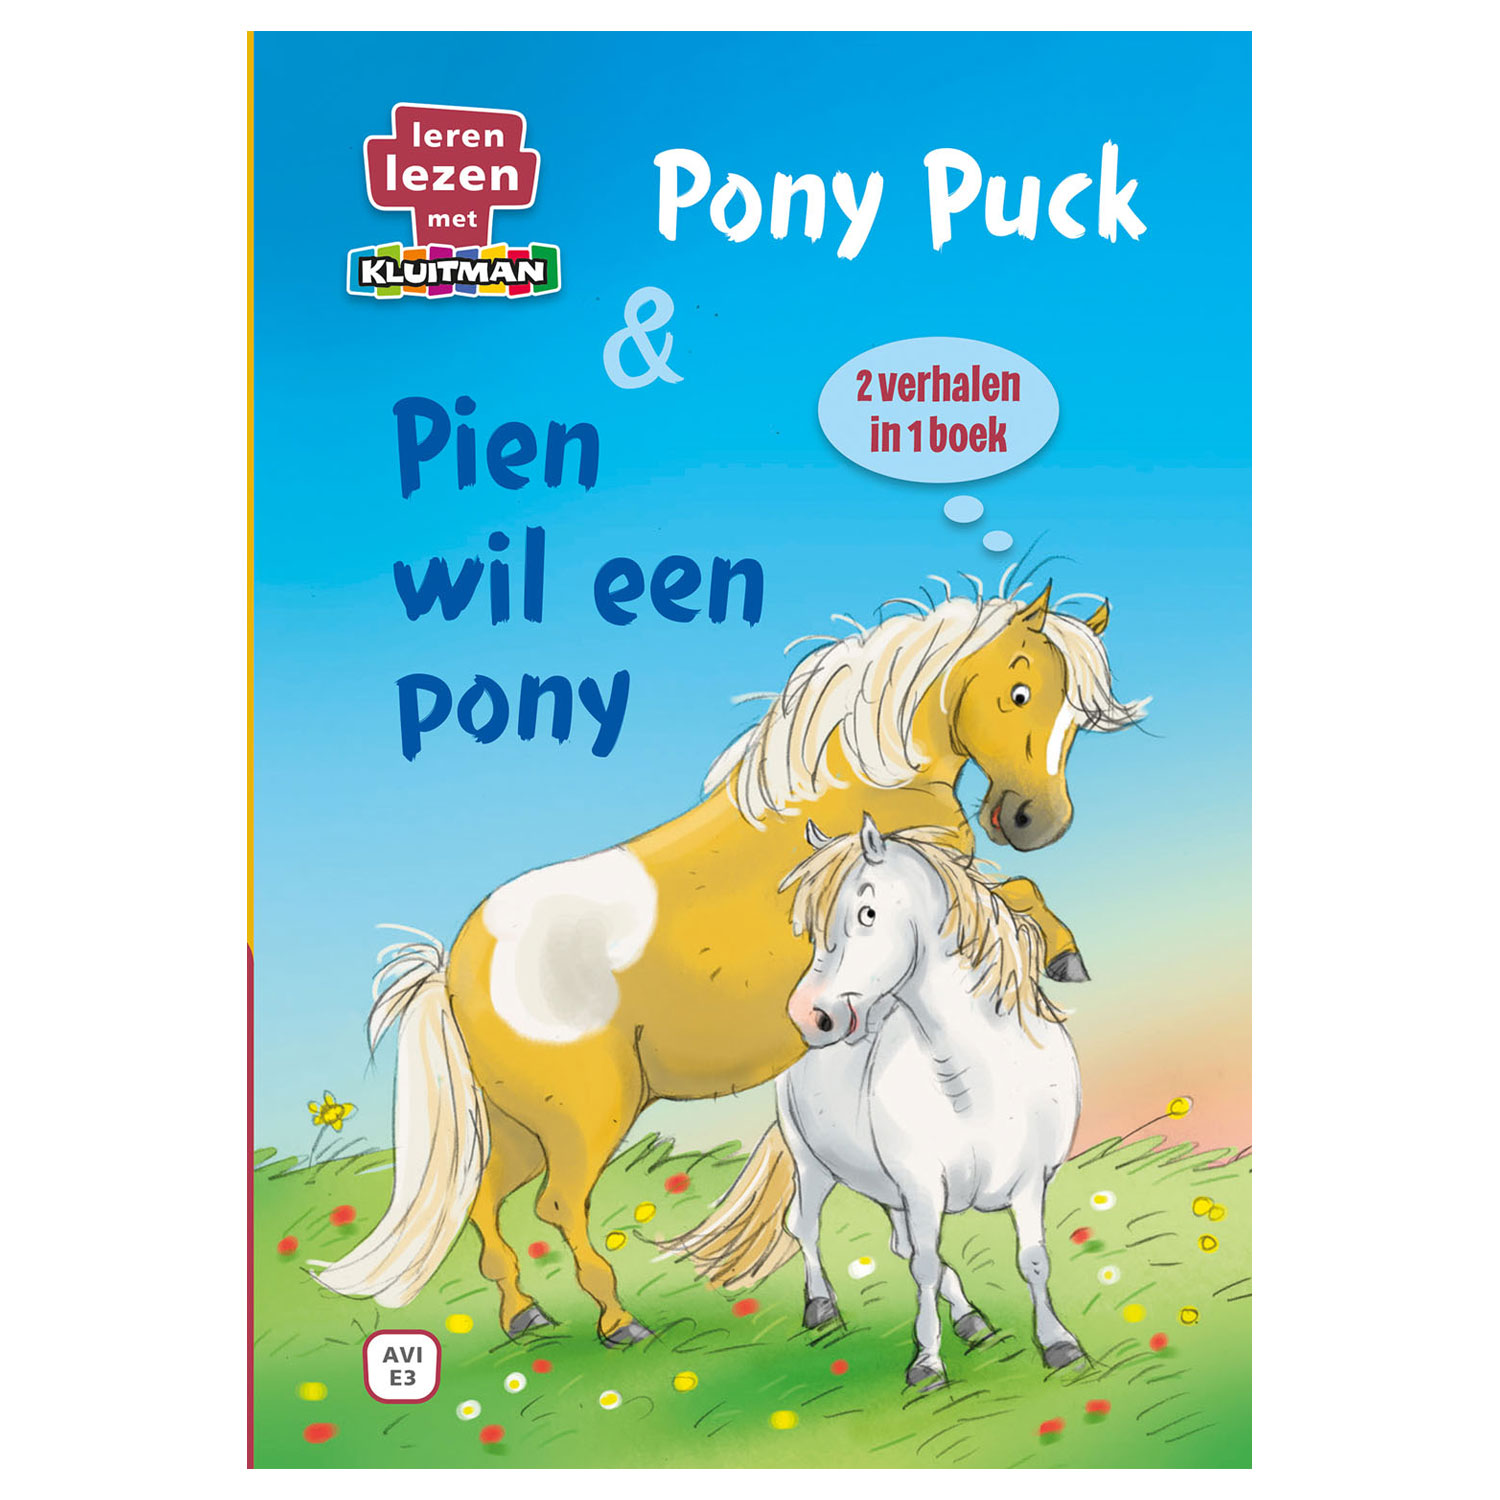 Pony Puck & Pien wil een pony 2in1 - AVI E3